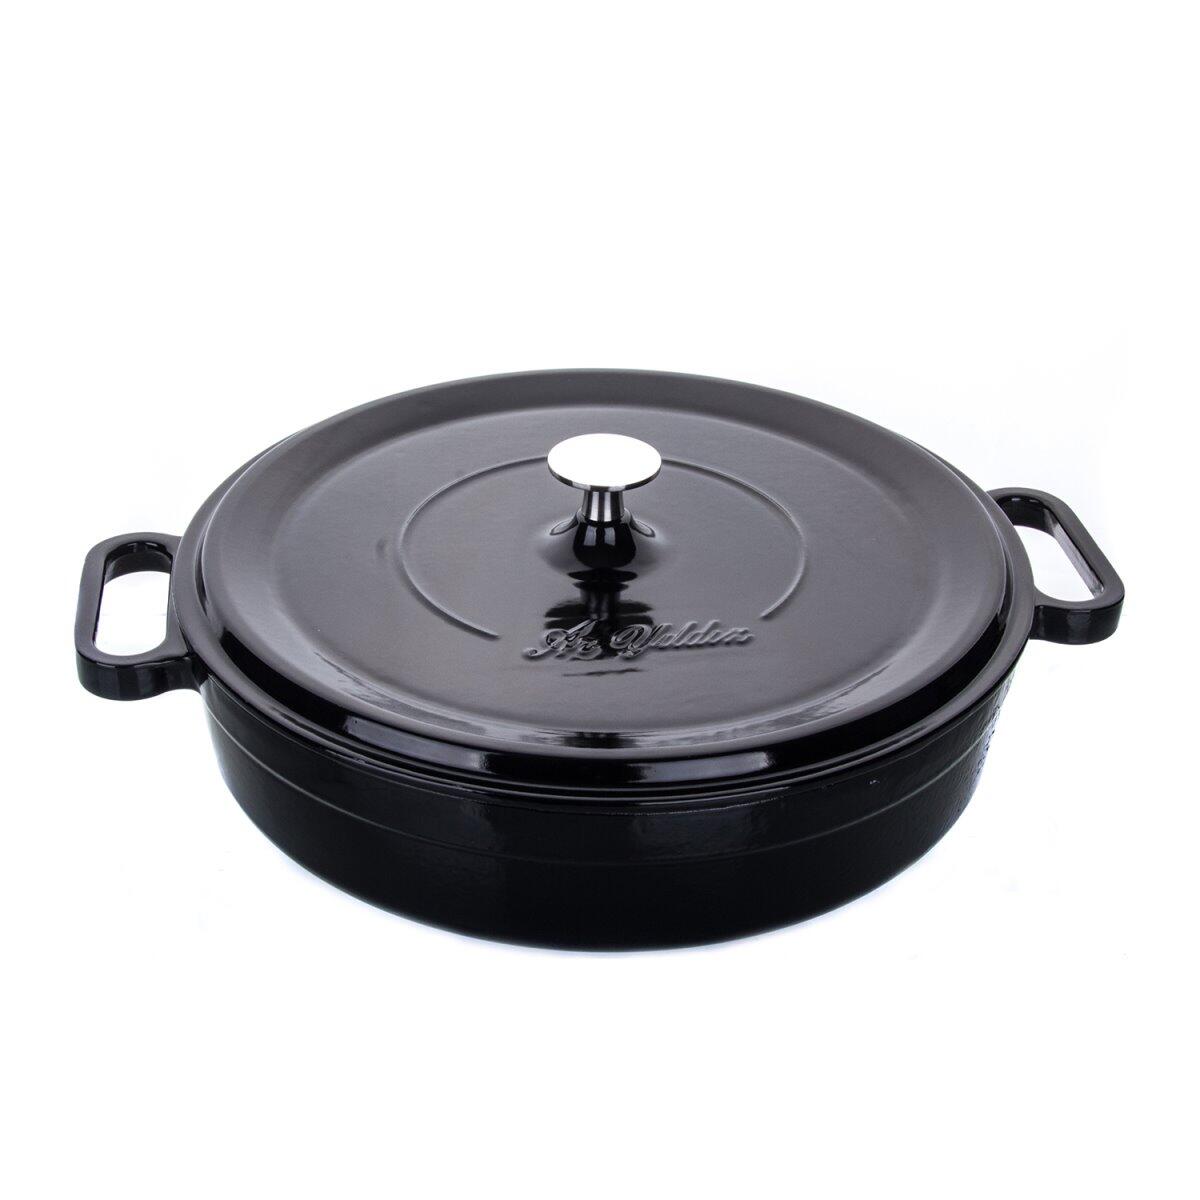 Aryıldız Cast Iron Pot Black 28 Cm